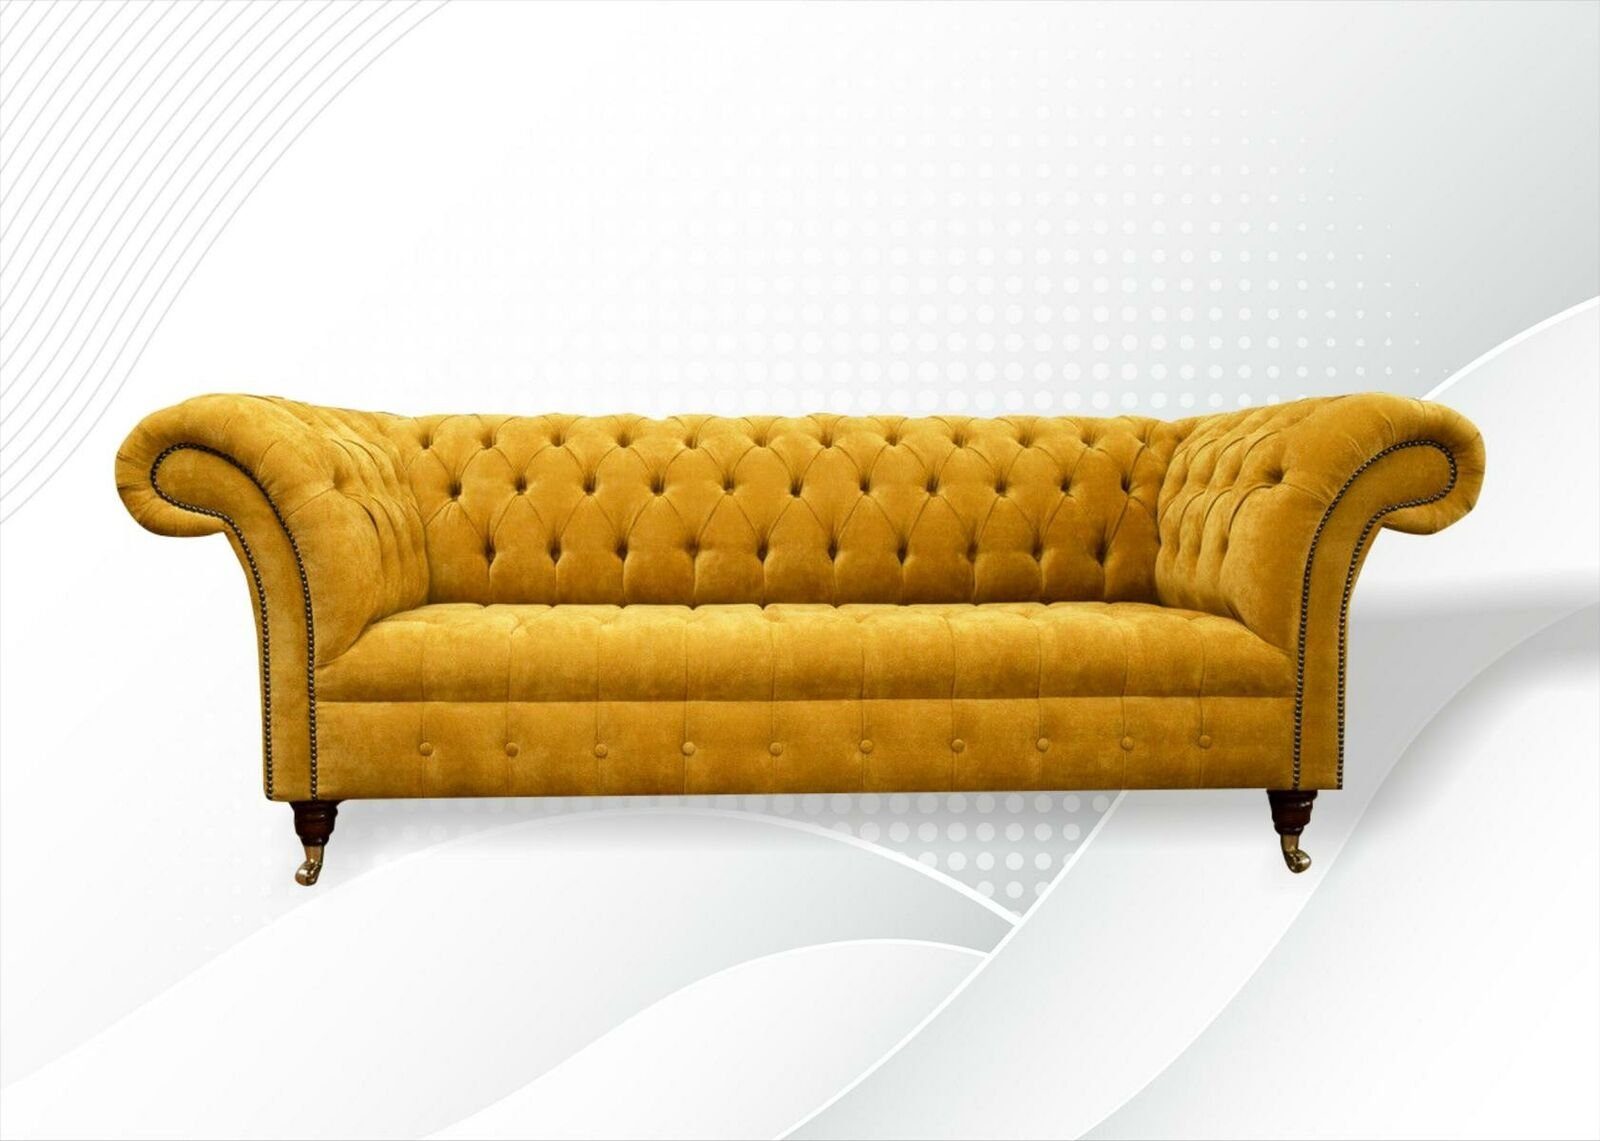 JVmoebel Chesterfield-Sofa Gelber luxus Dreisitzer Chesterfield Möbel 3-er Couch Neu, Made in Europe